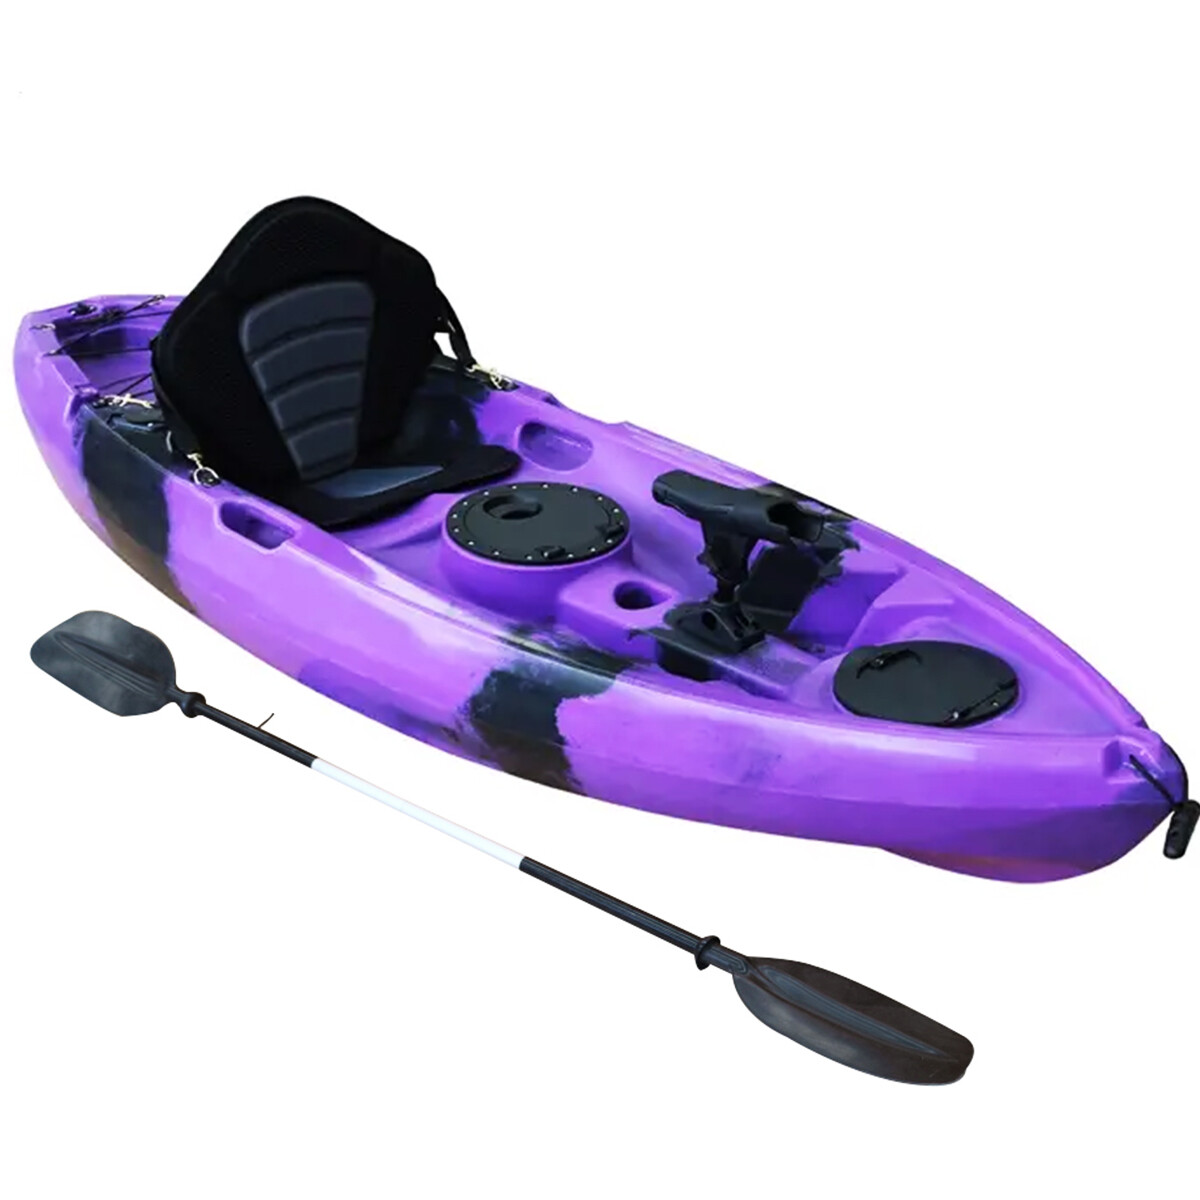 Bote Kayak Piraña Coast Lango Profesional + Asiento + Remo - Violeta 